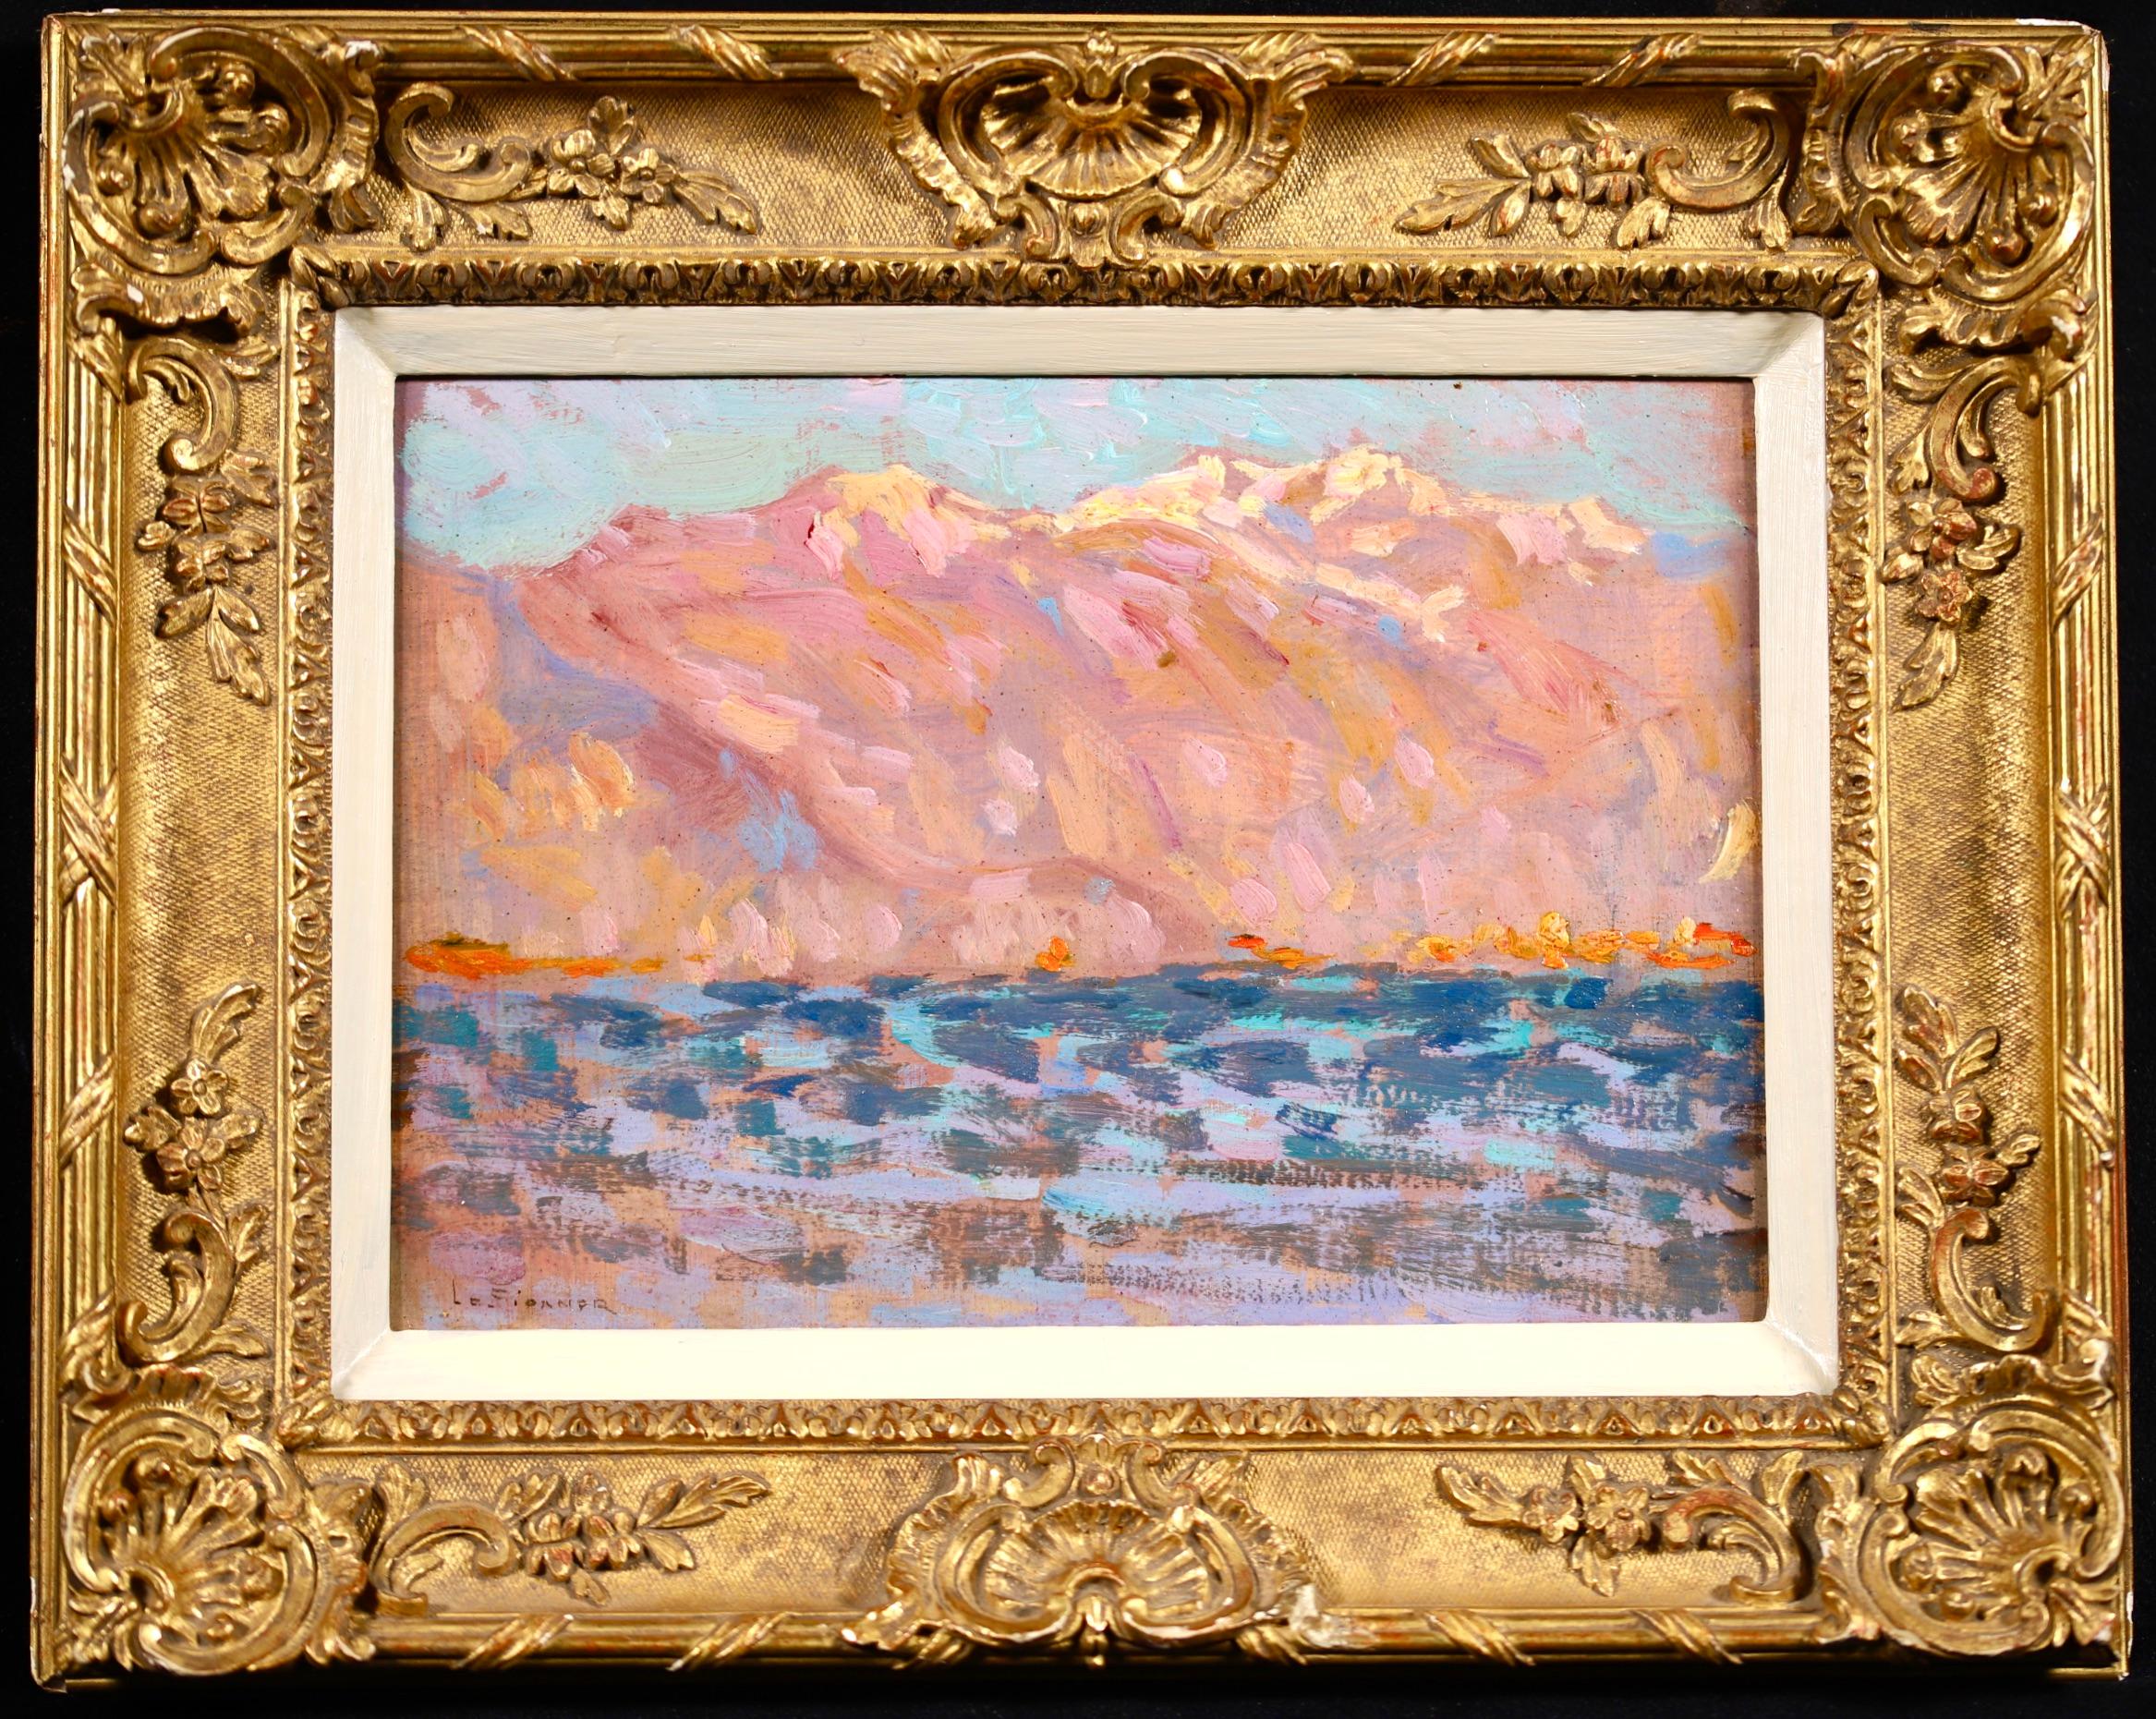 Huile sur panneau post impressionniste signée vers 1910 par le peintre français Henri le Sidaner. L'œuvre représente une vue du lac Majeur, un grand lac situé sur le versant sud des Alpes, à la frontière entre l'Italie et la Suisse, et le deuxième